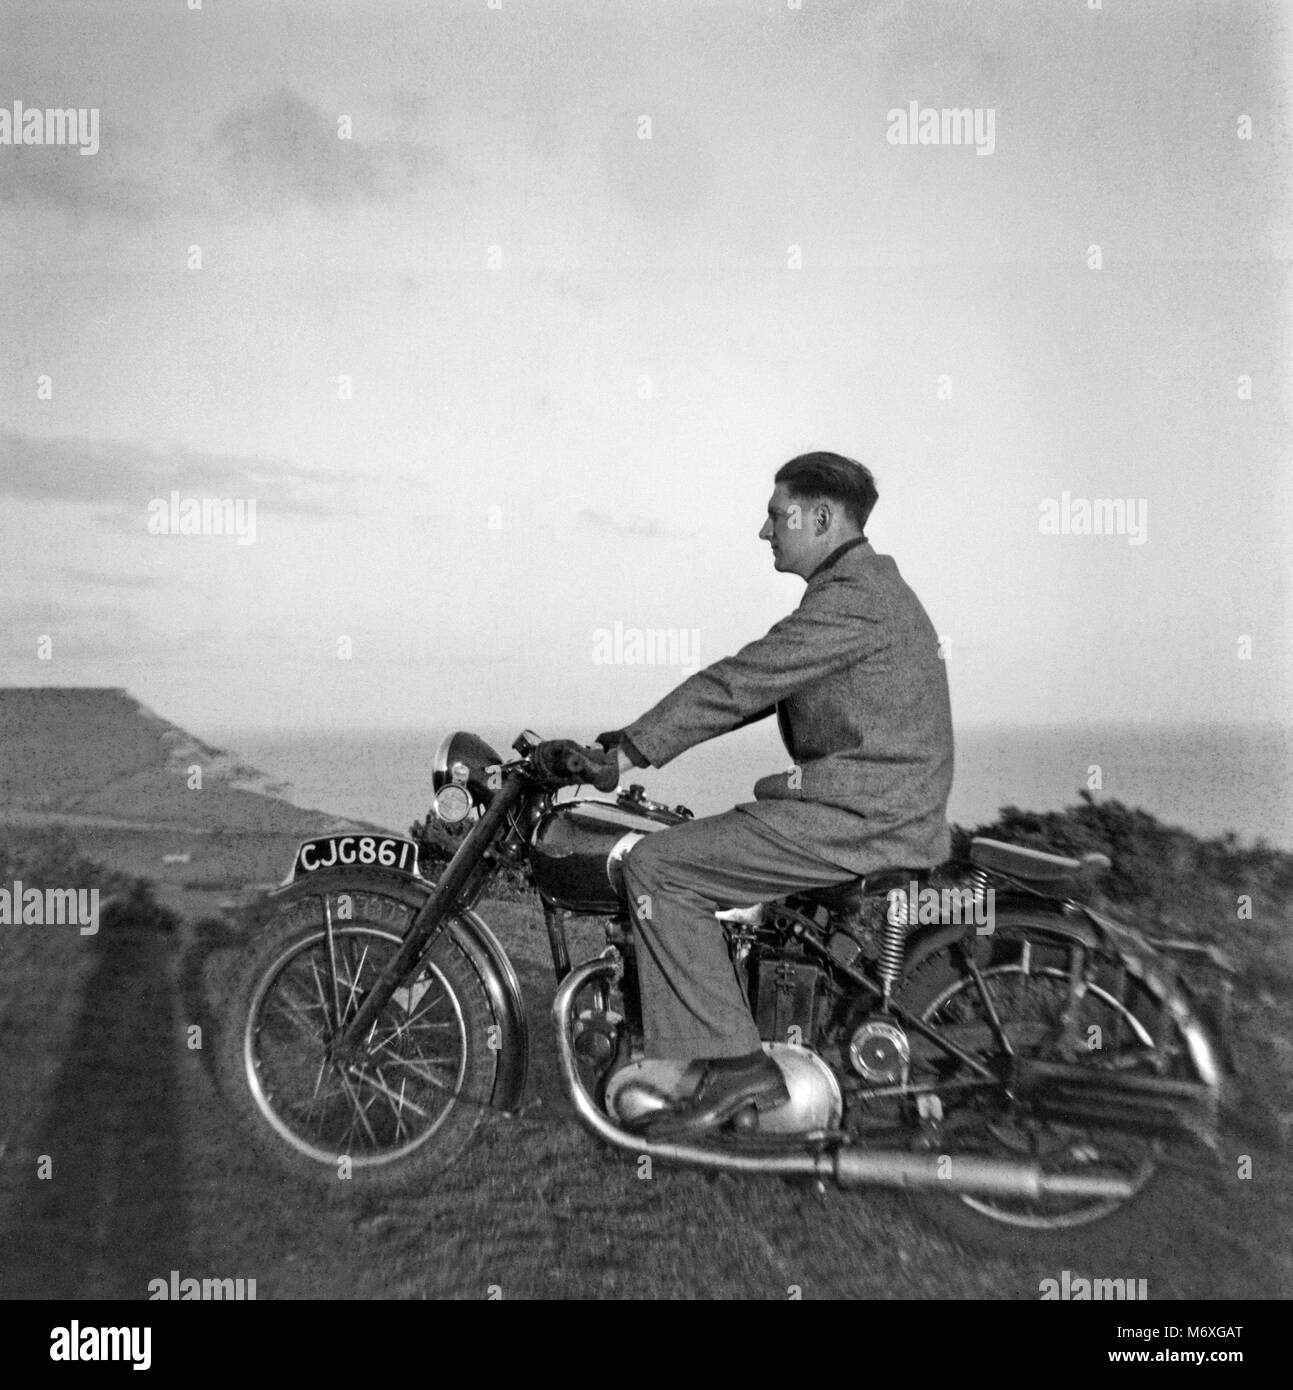 Vintage photo d'un homme monté sur une moto Triumph en Angleterre durant les années 1930. Banque D'Images